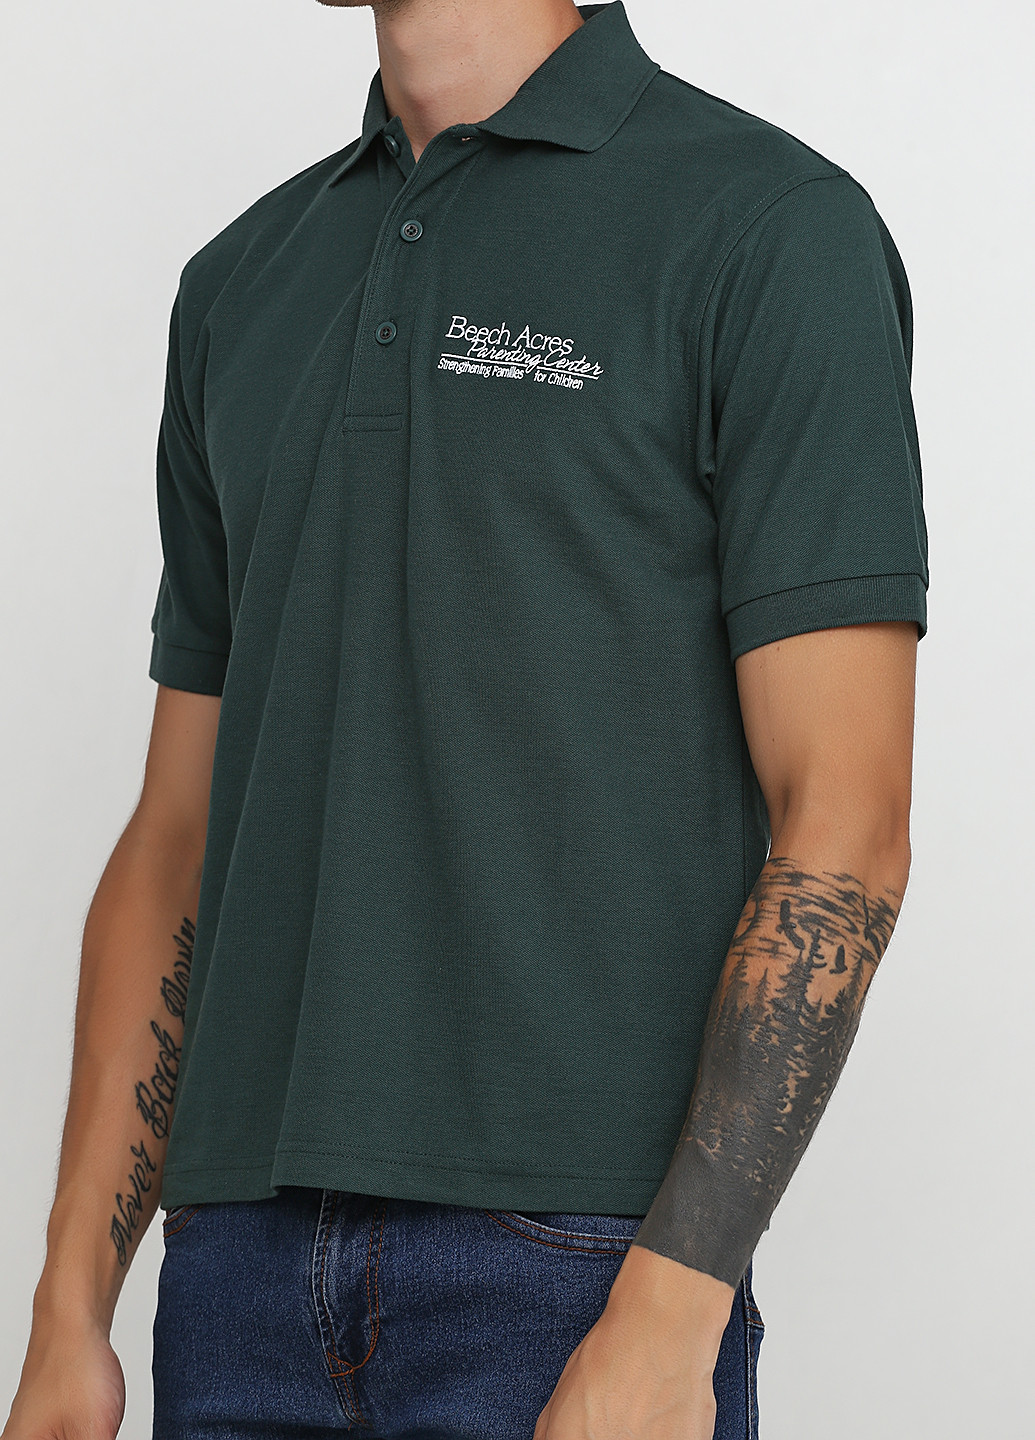 Зеленая футболка-поло для мужчин PORT с надписью